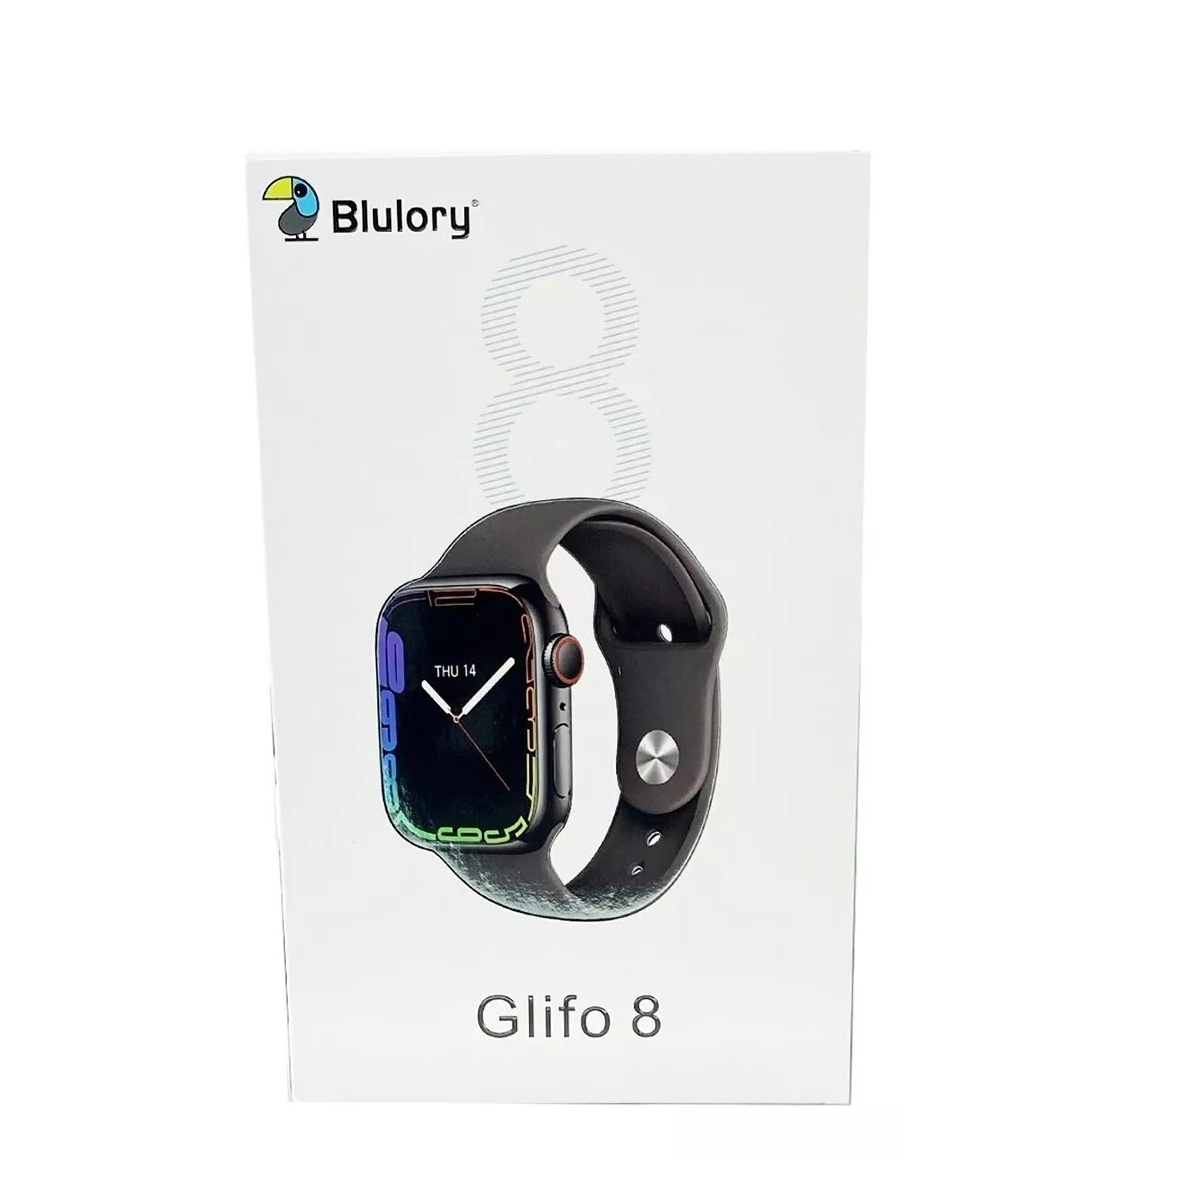 1f9bcc6a-2b39-4ef7-8b4f-dc44a5d68315-reloj-smartwatch-blulory-glifo-8-negro